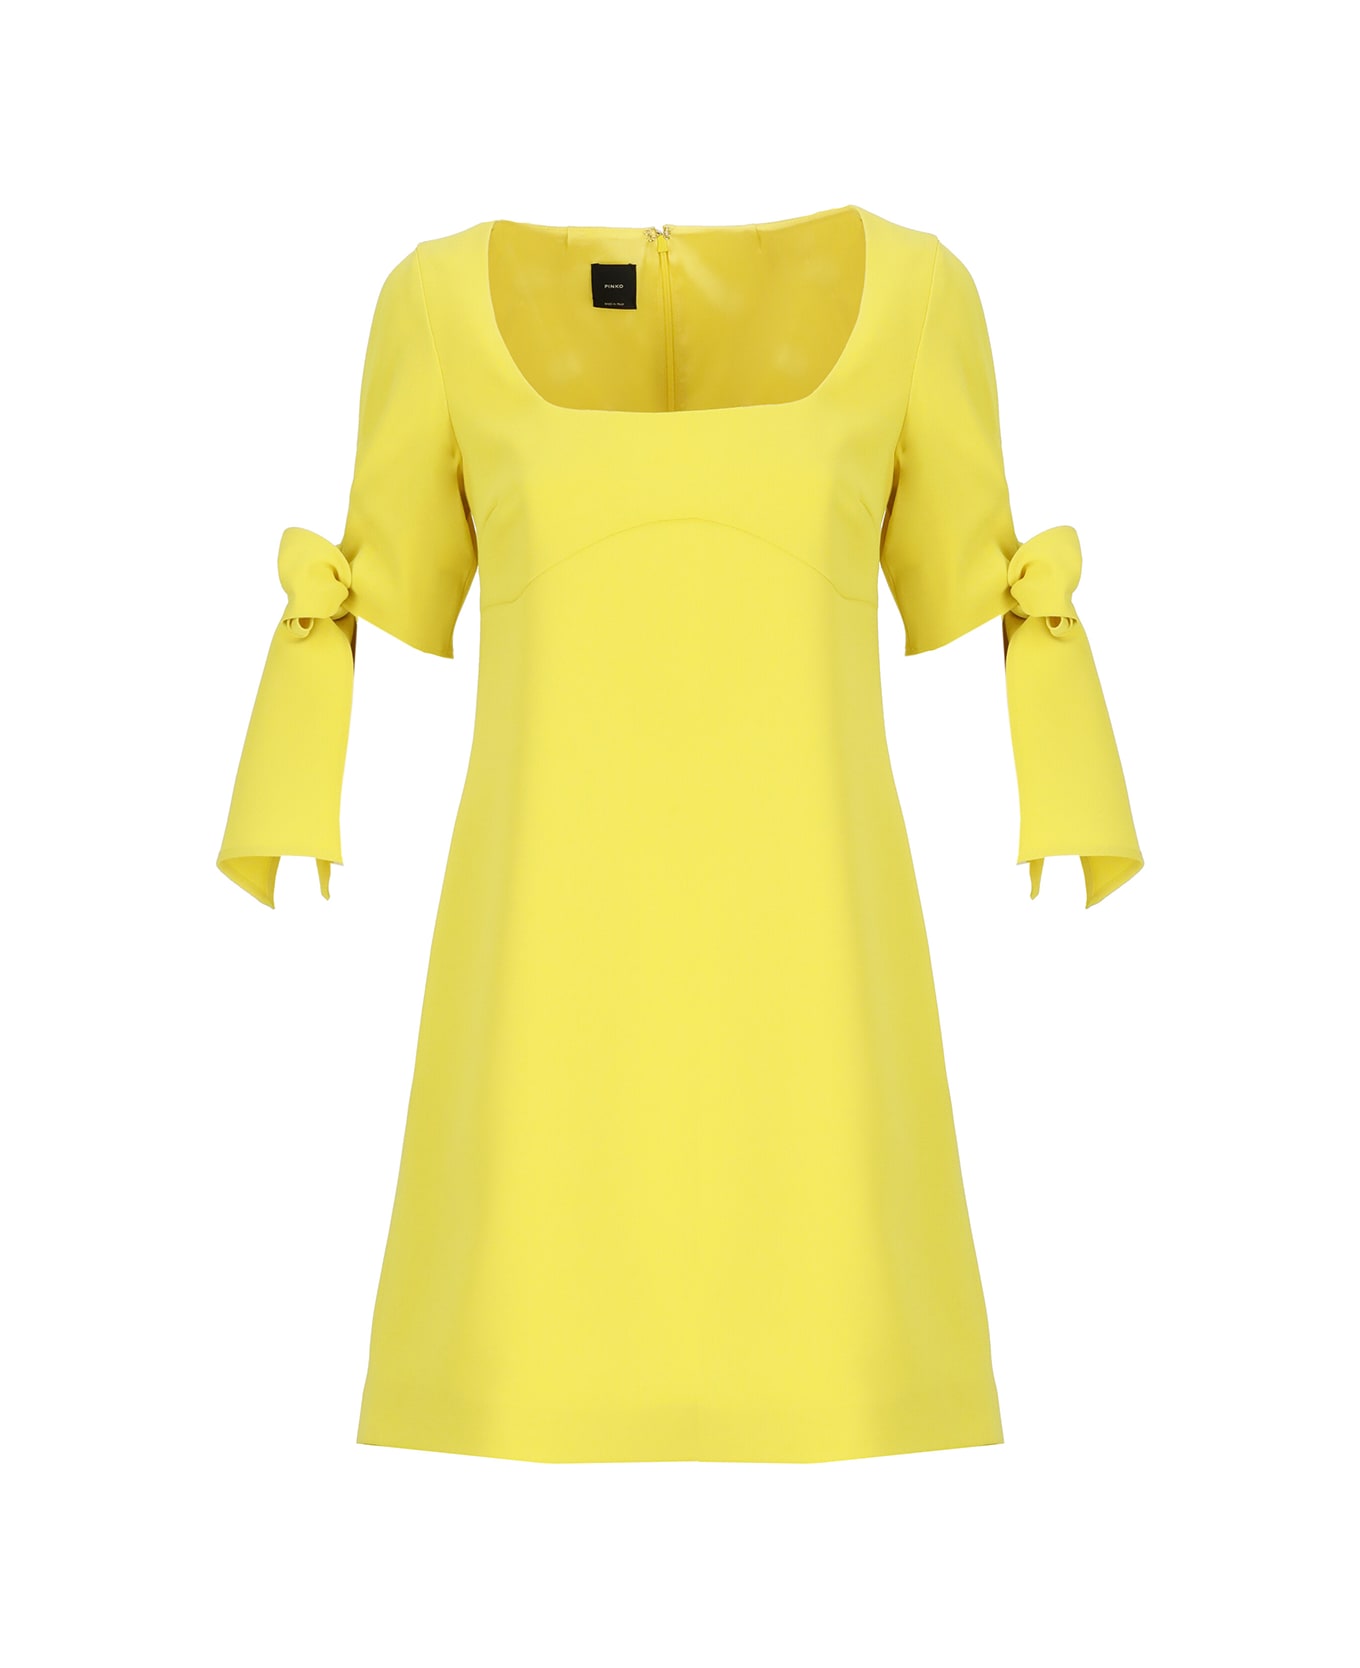 Pinko Verdicchio Dress - Yellow